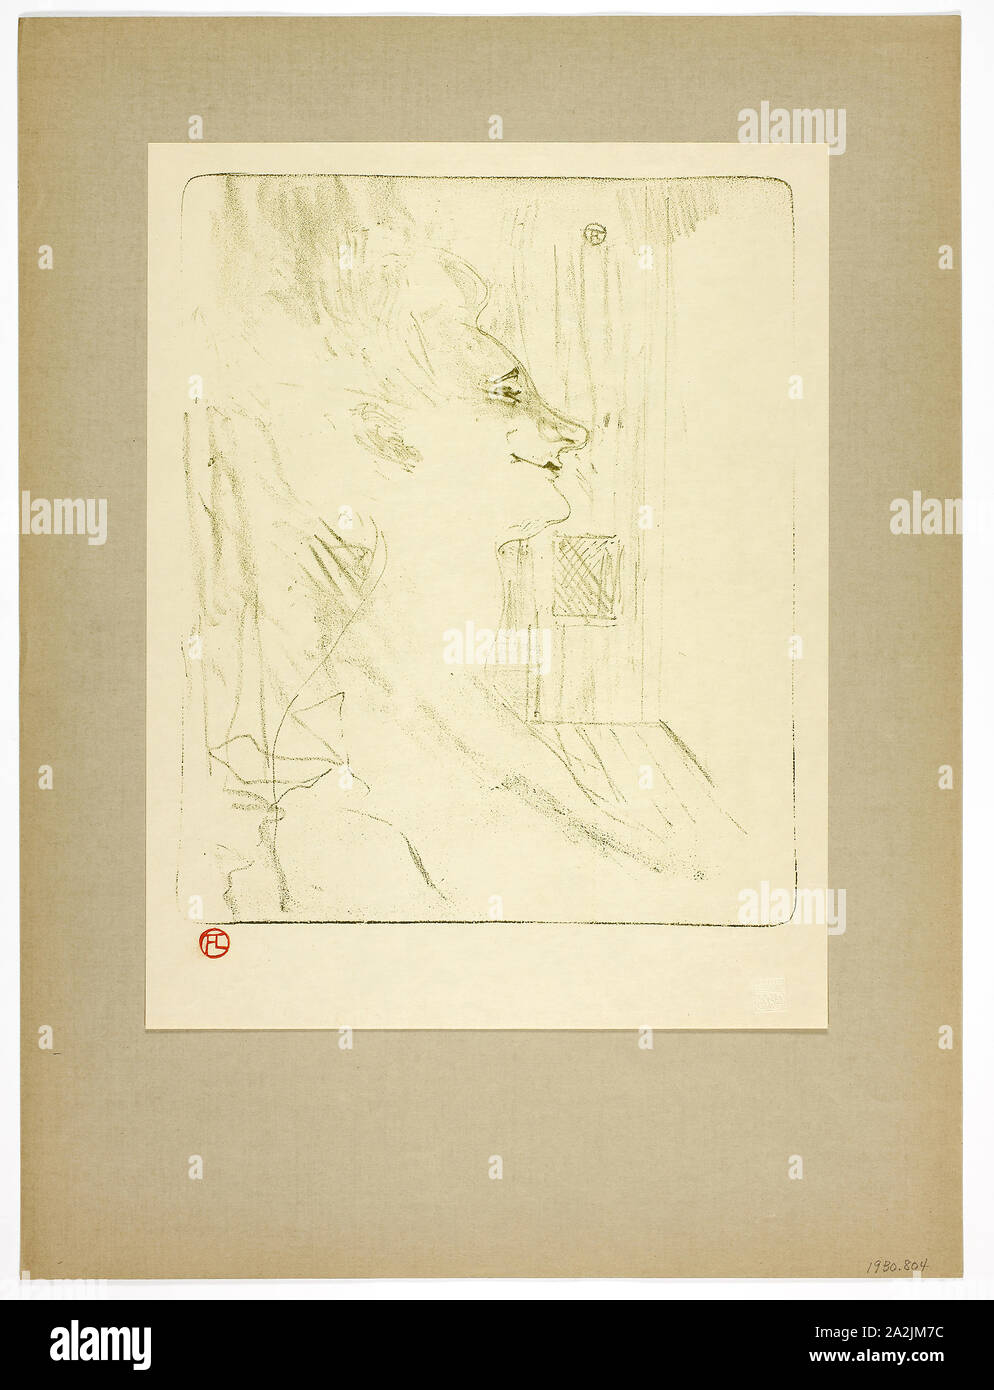 Soûlarde, Platte sechs von Yvette Guilbert, 1898, Gedruckt 1930, Henri de Toulouse-Lautrec (Französisch, 1864-1901), von Westminster Presse (Englisch, 20. Jahrhundert), veröffentlicht durch das Ernest Braun & Phillips (Englisch, 20. Jahrhundert), Frankreich, Lithographie (Kreide) in Oliv-grün auf Creme webte Papier mit Scharnieren am oberen Ecken zu grau-braun wob Papier, 296 × 244 mm (Bild), 349 × 268 mm (Primary Support), 497 × 371 mm (sekundäre Unterstützung Stockfoto